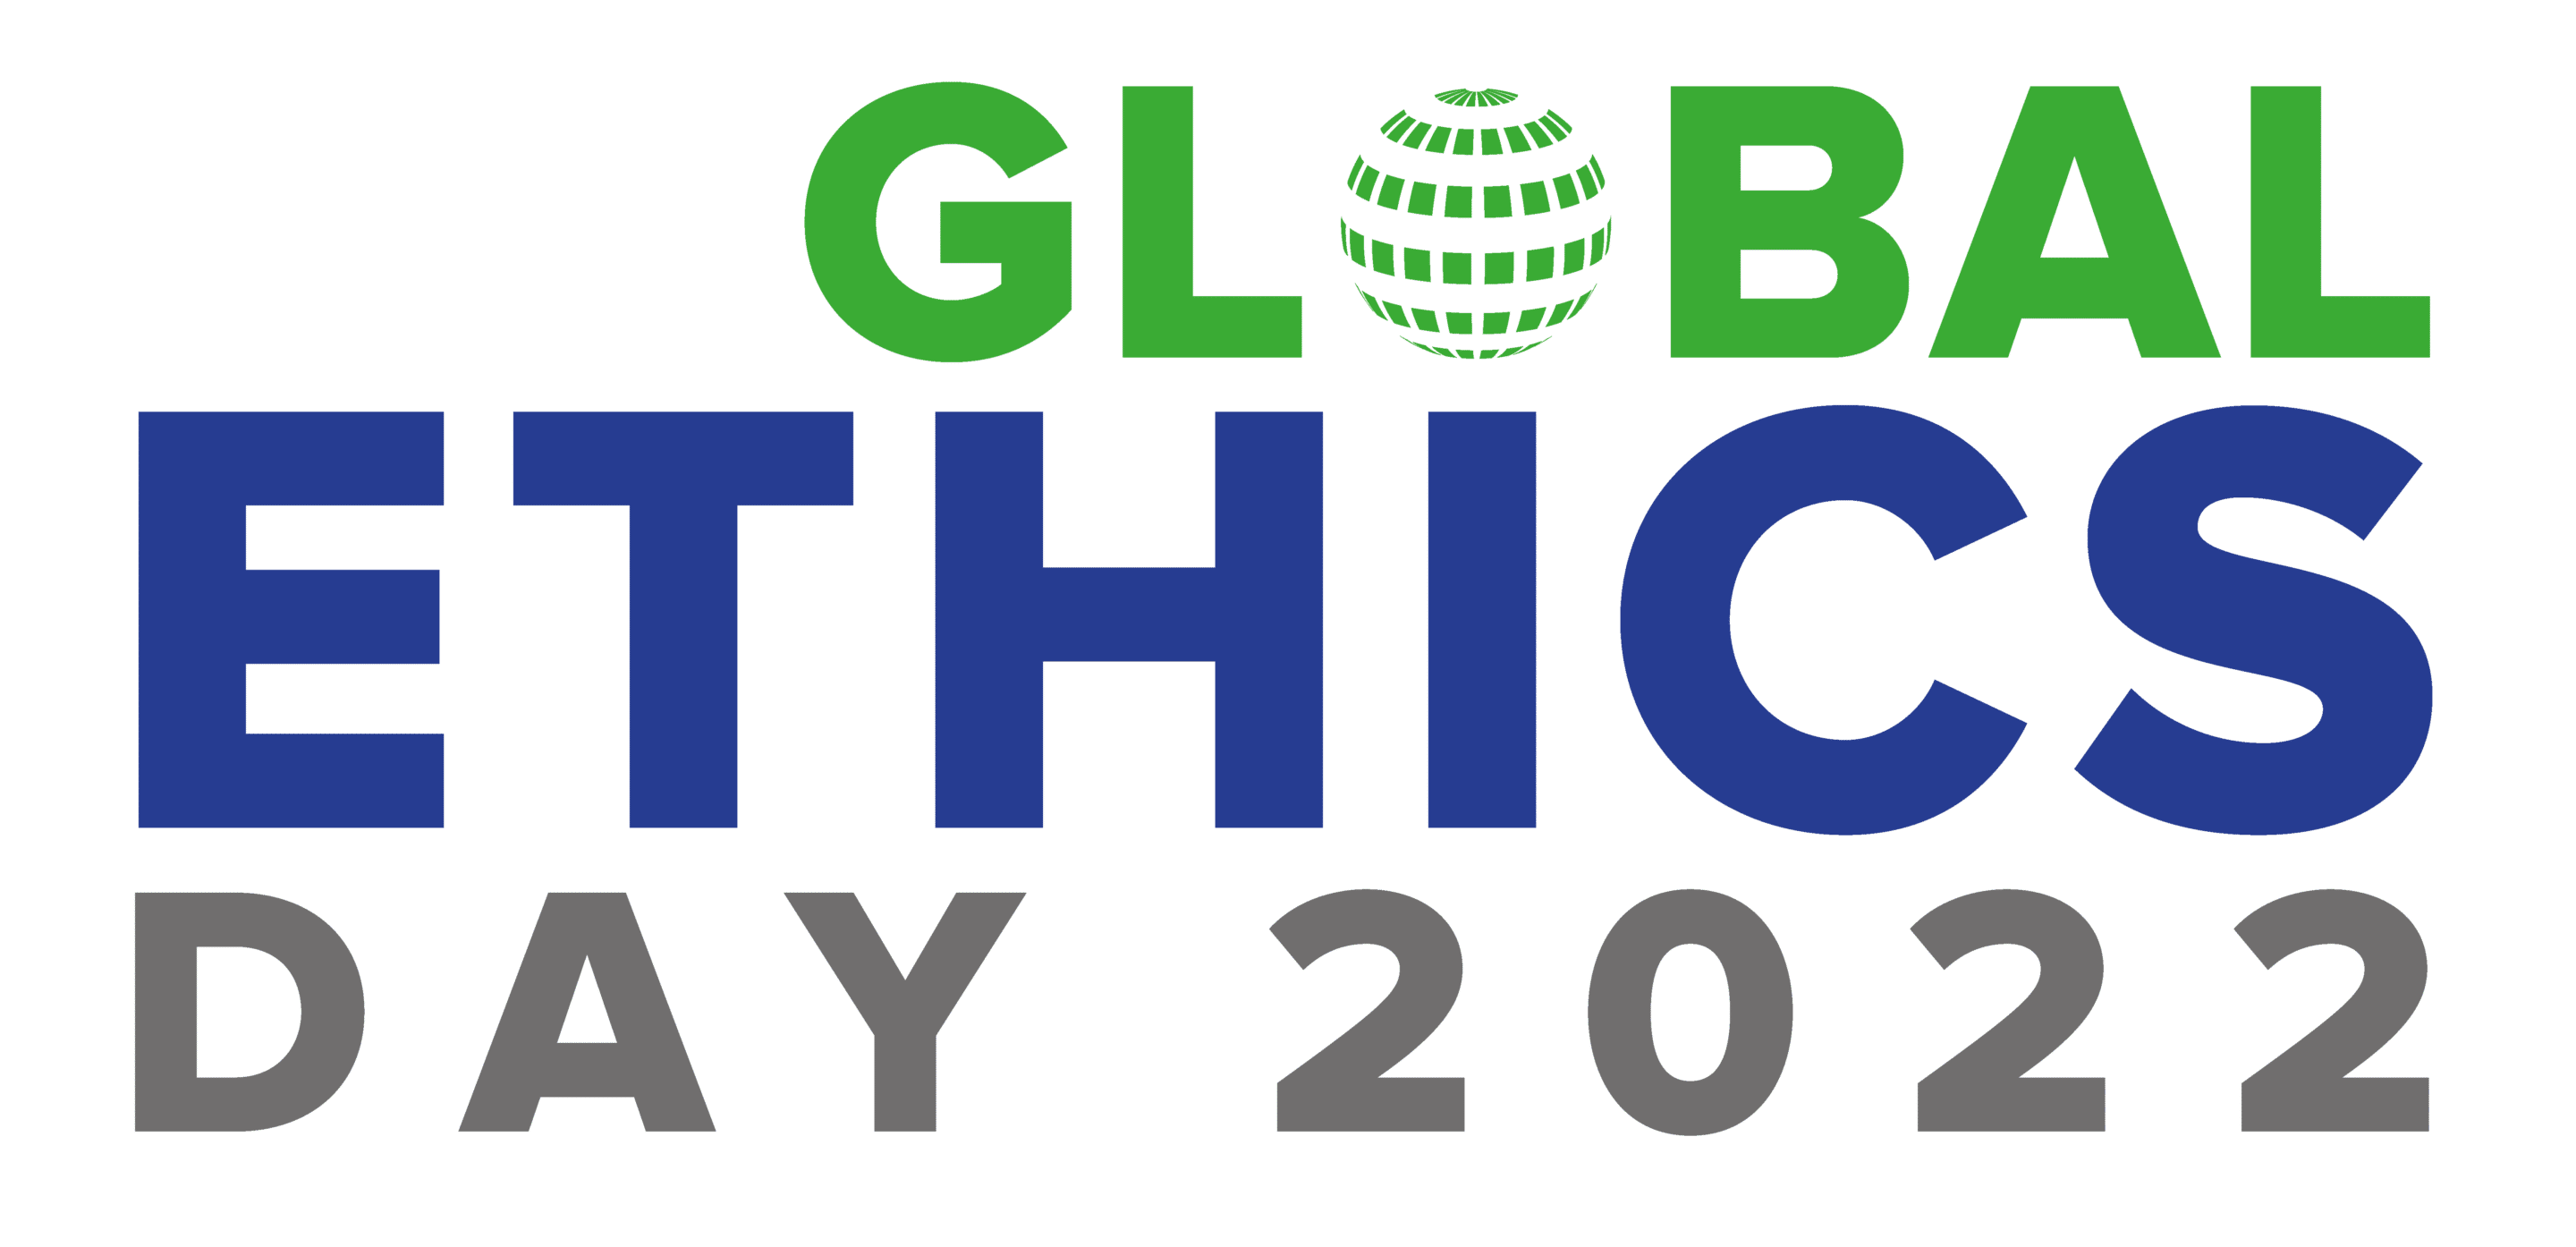 Global Ethics Day 2022